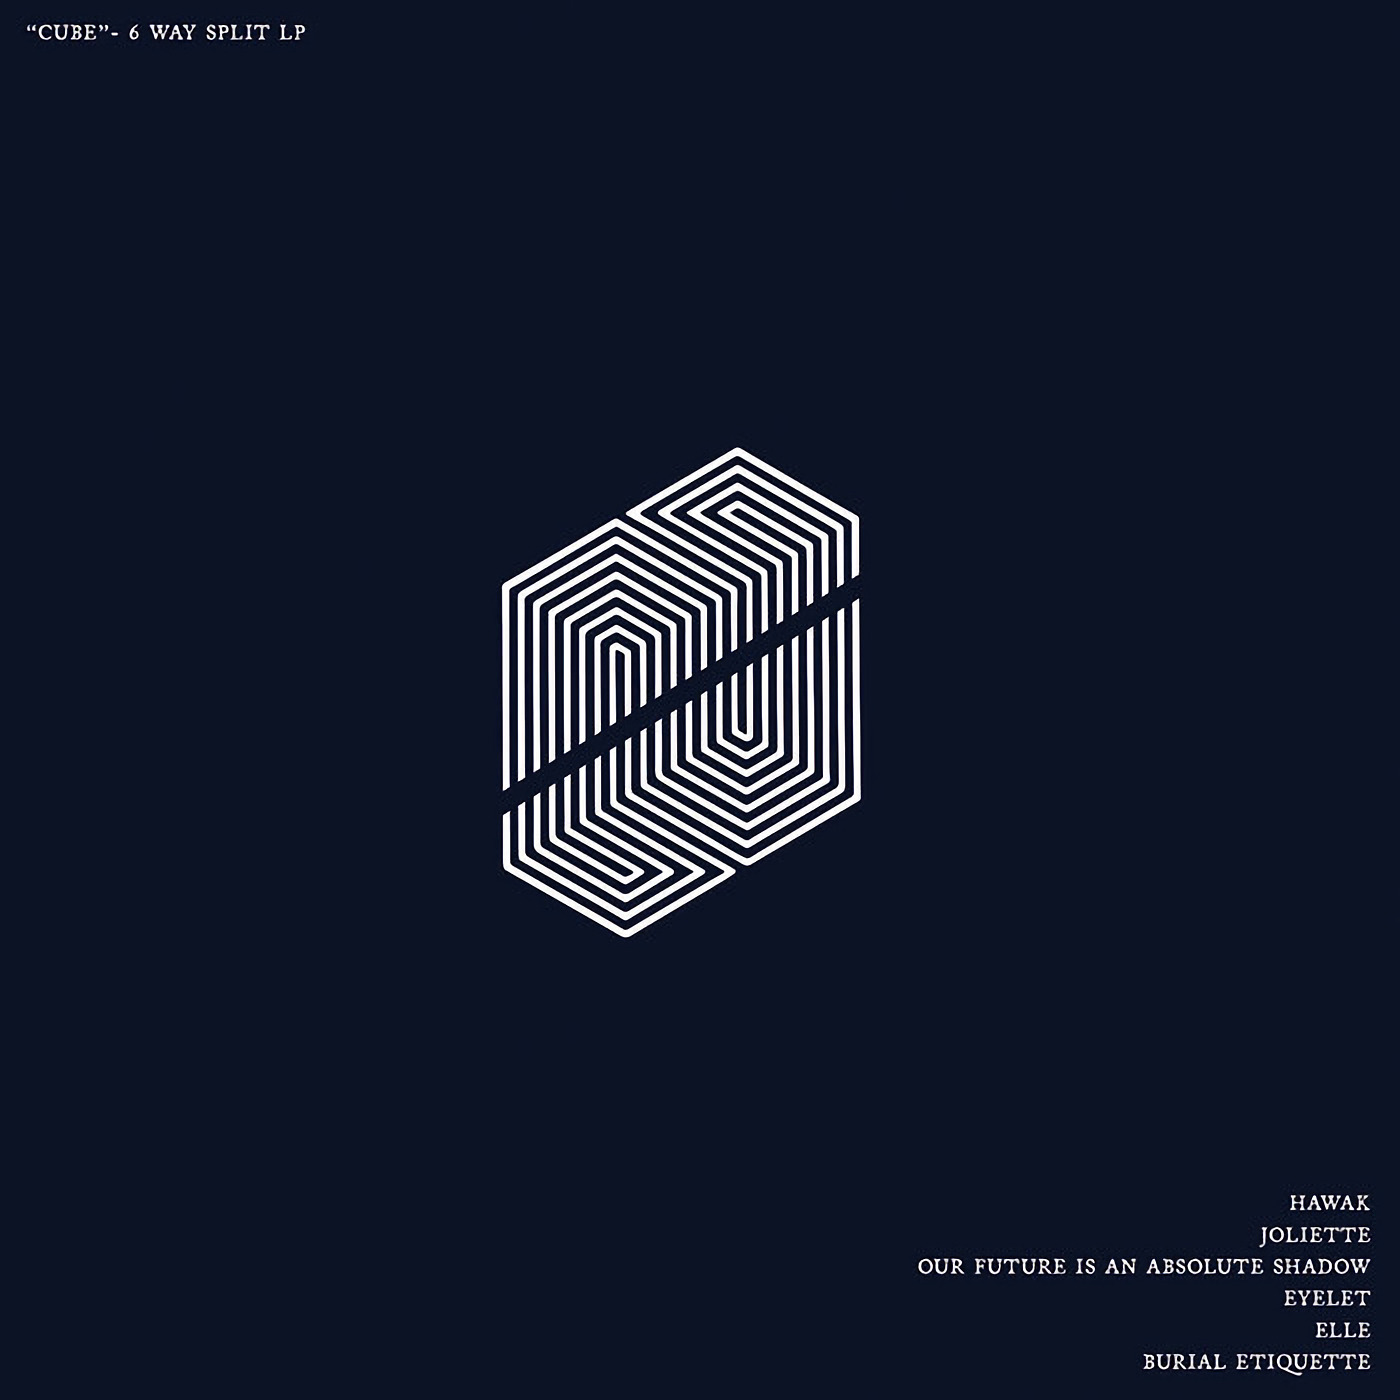 Cube - A Six Way Split / V.A.